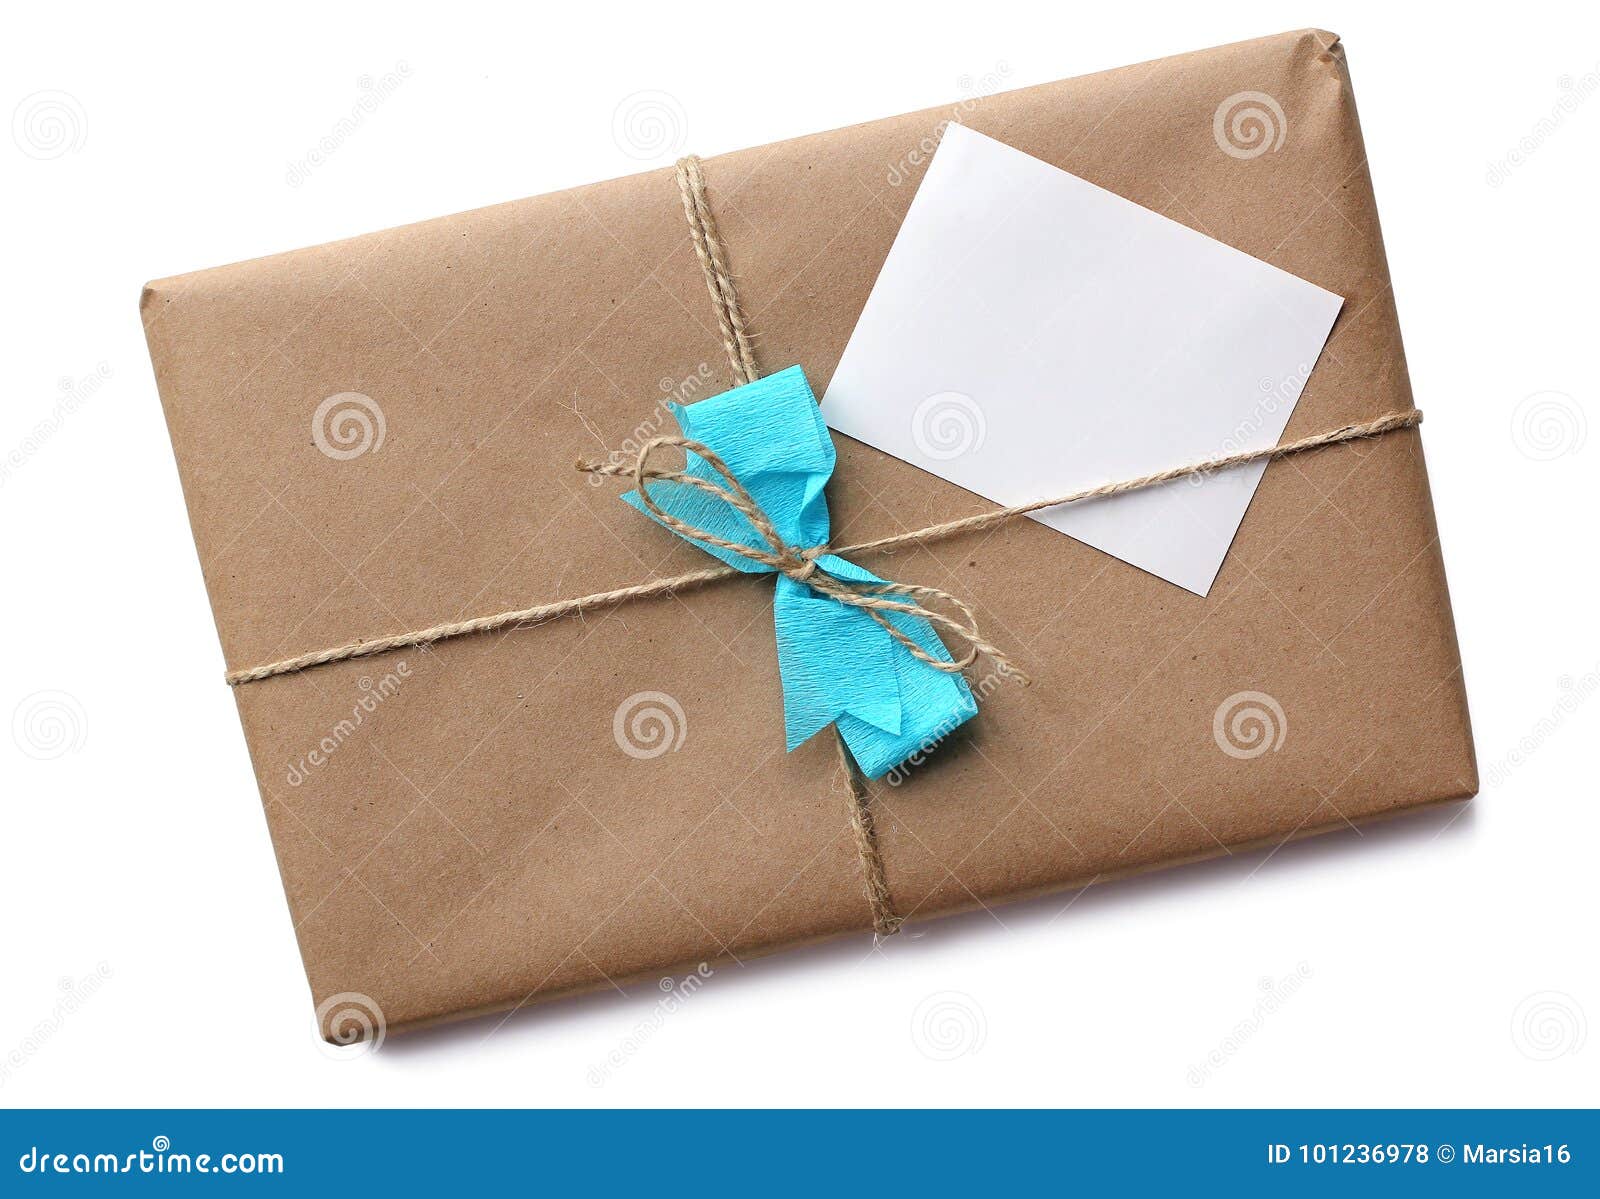 brown paper package